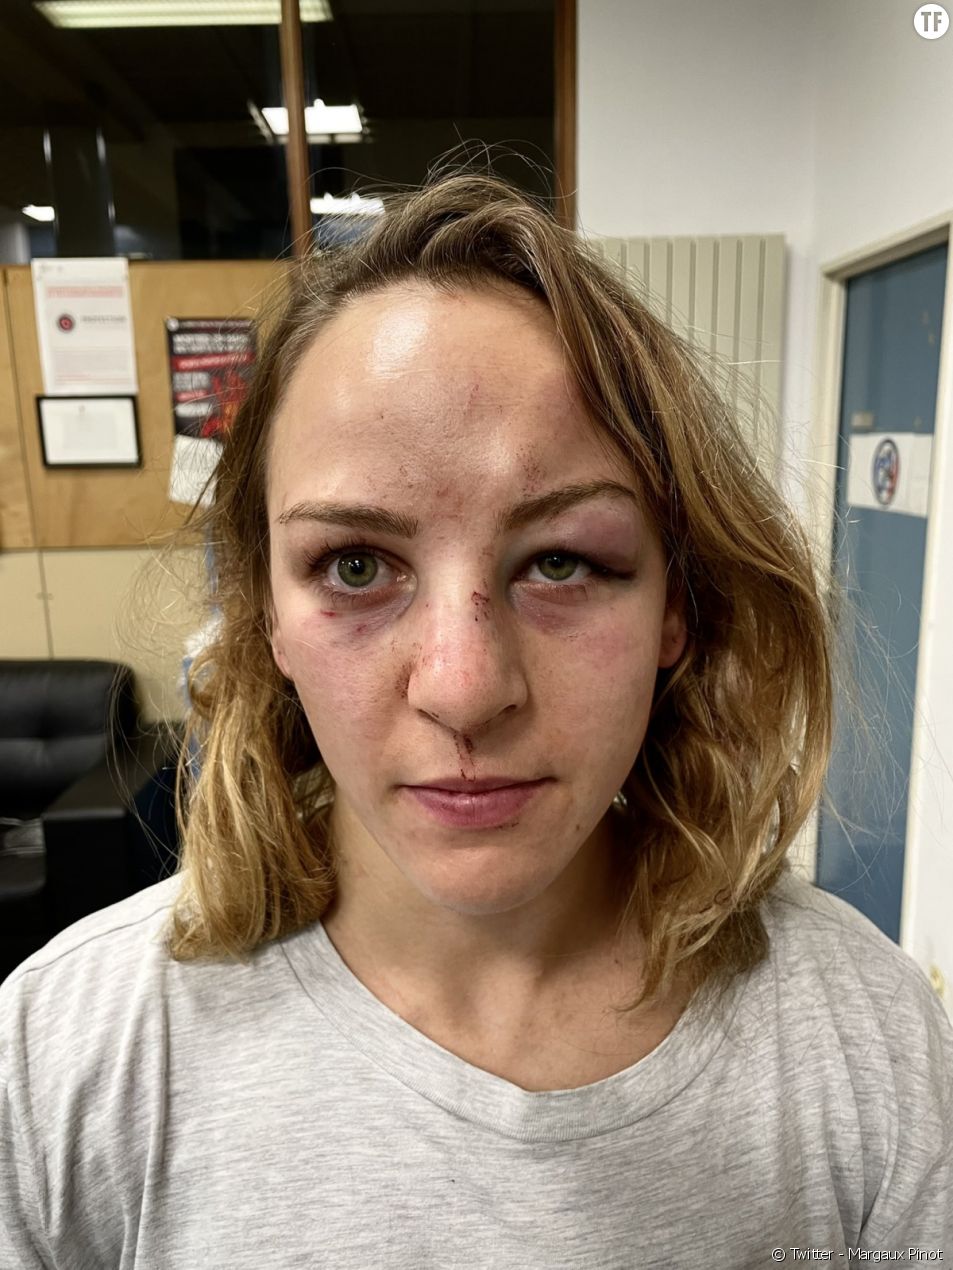 Le monde du judo sous le choc de la photo du visage tuméfié de Margaux Pinot [Twitter - Margaux Pinot]